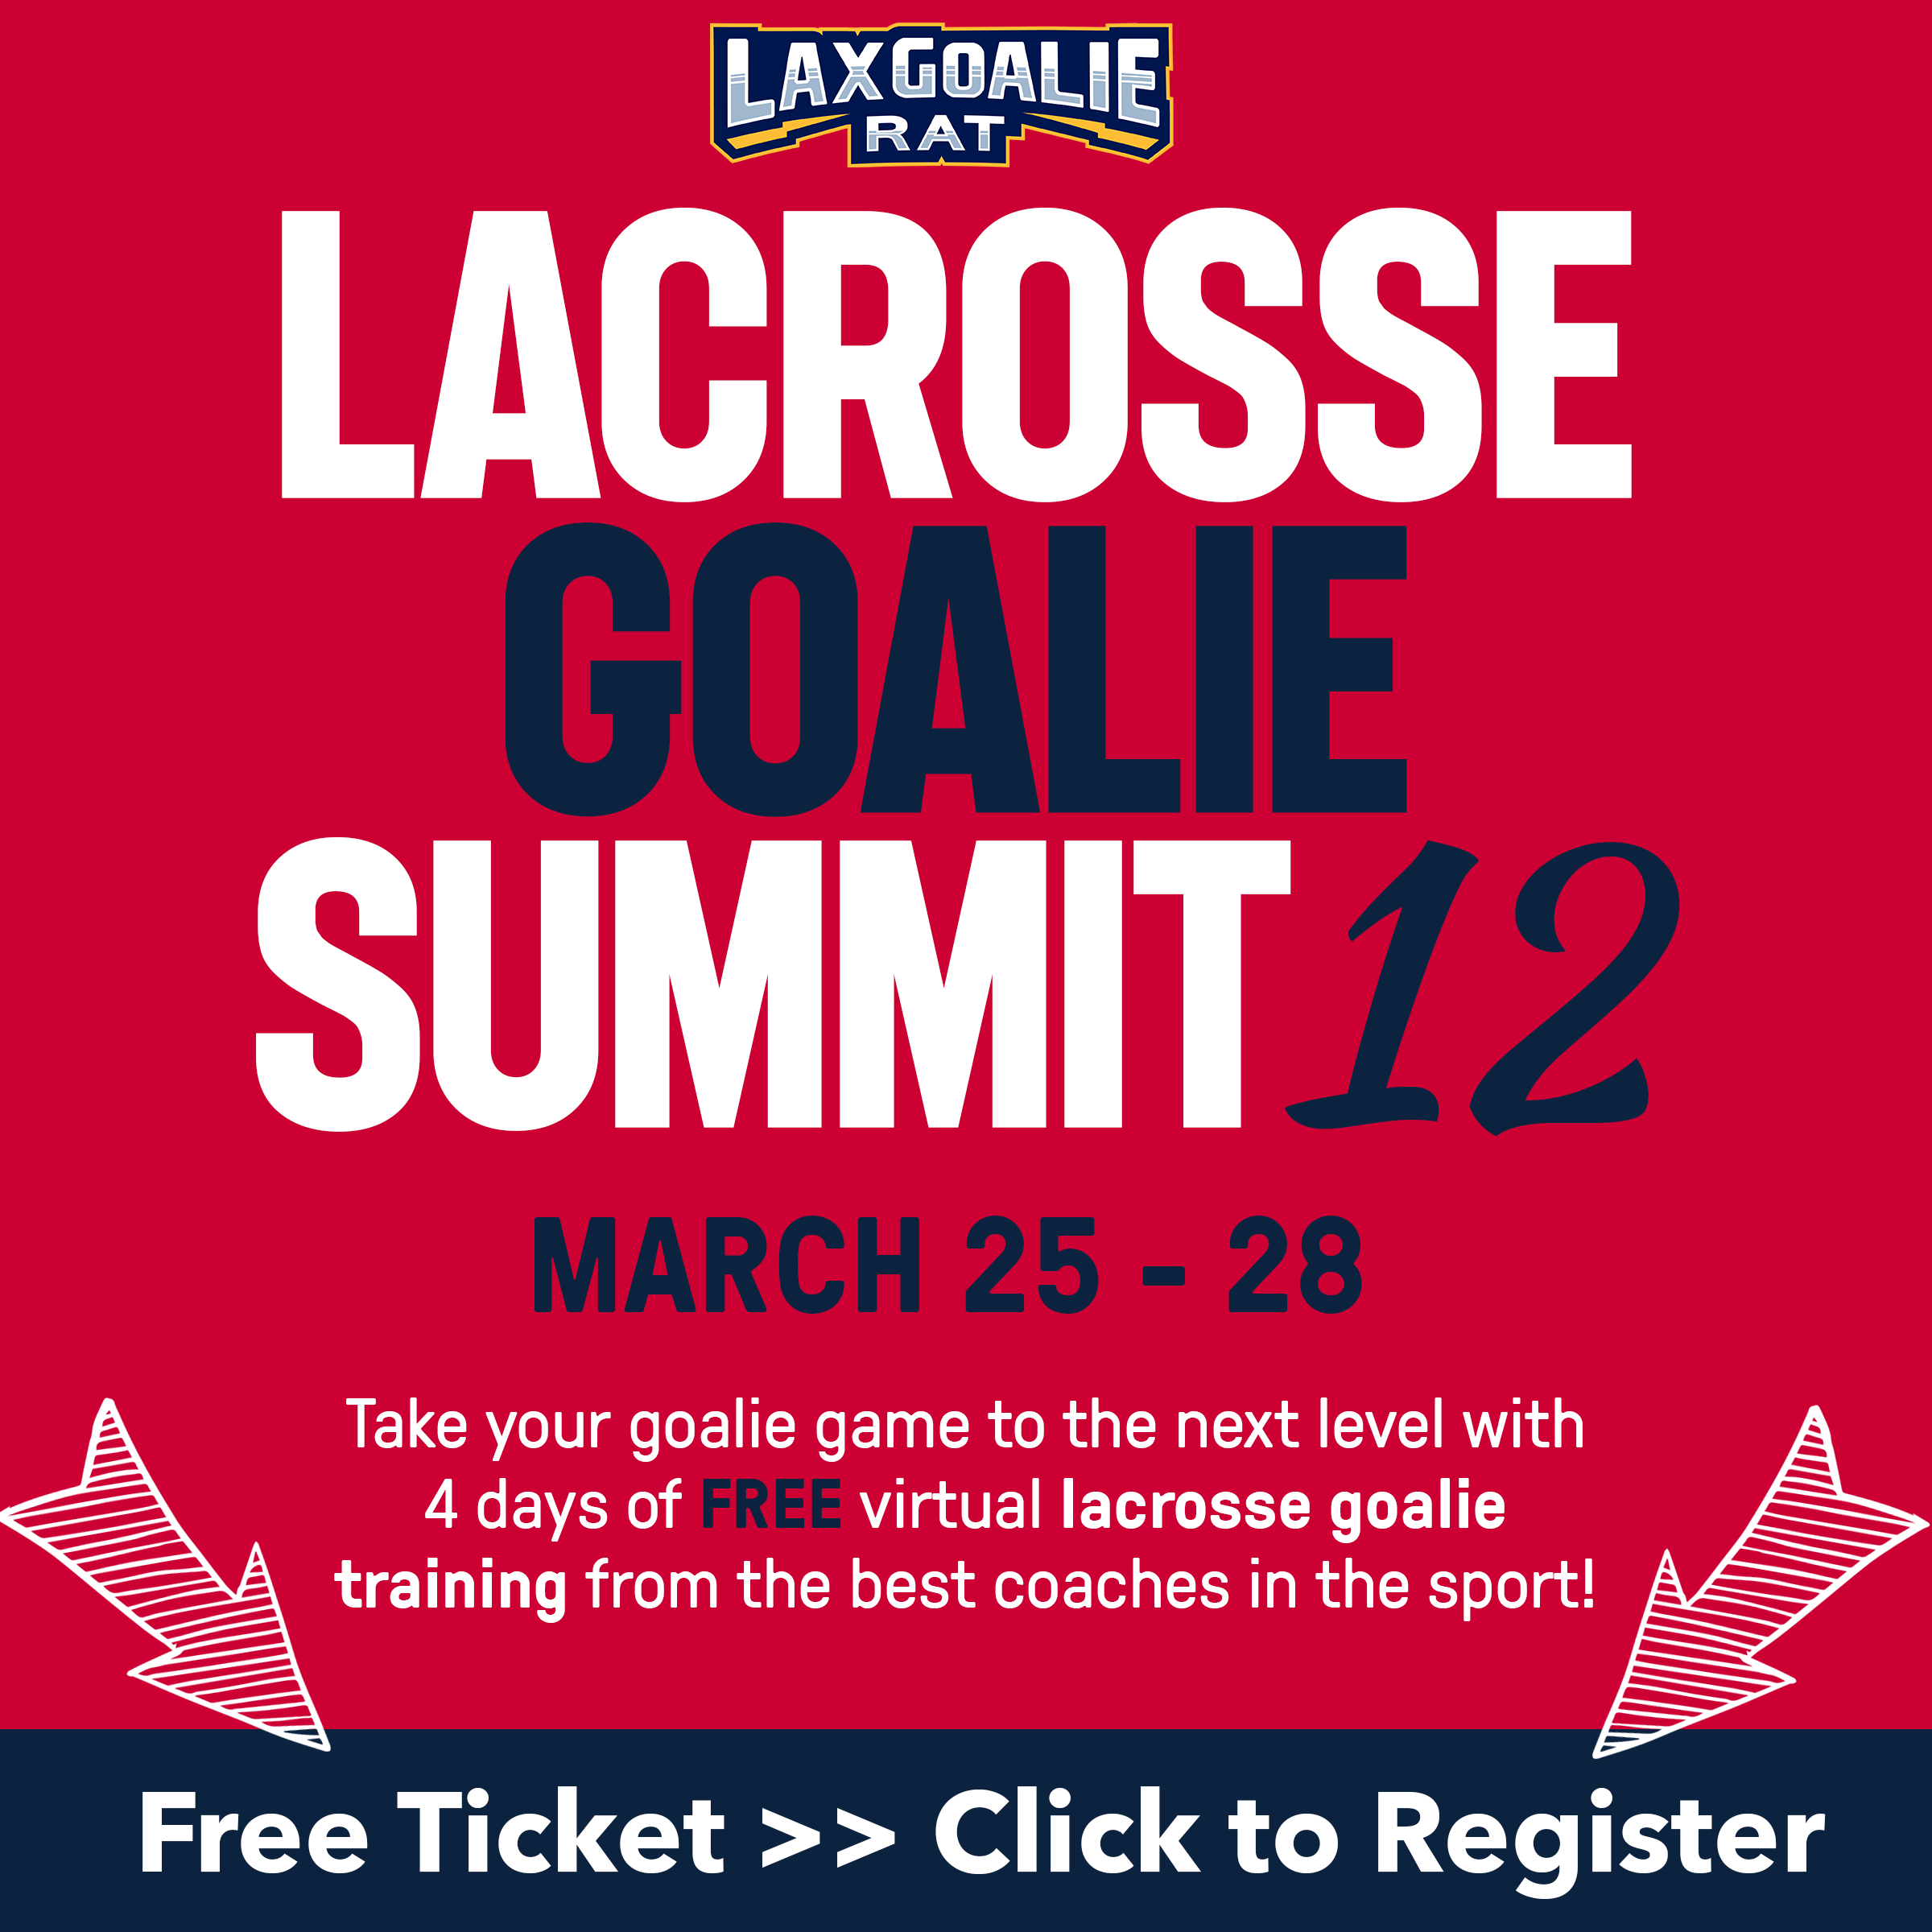 Lacrosse Goalie Summit